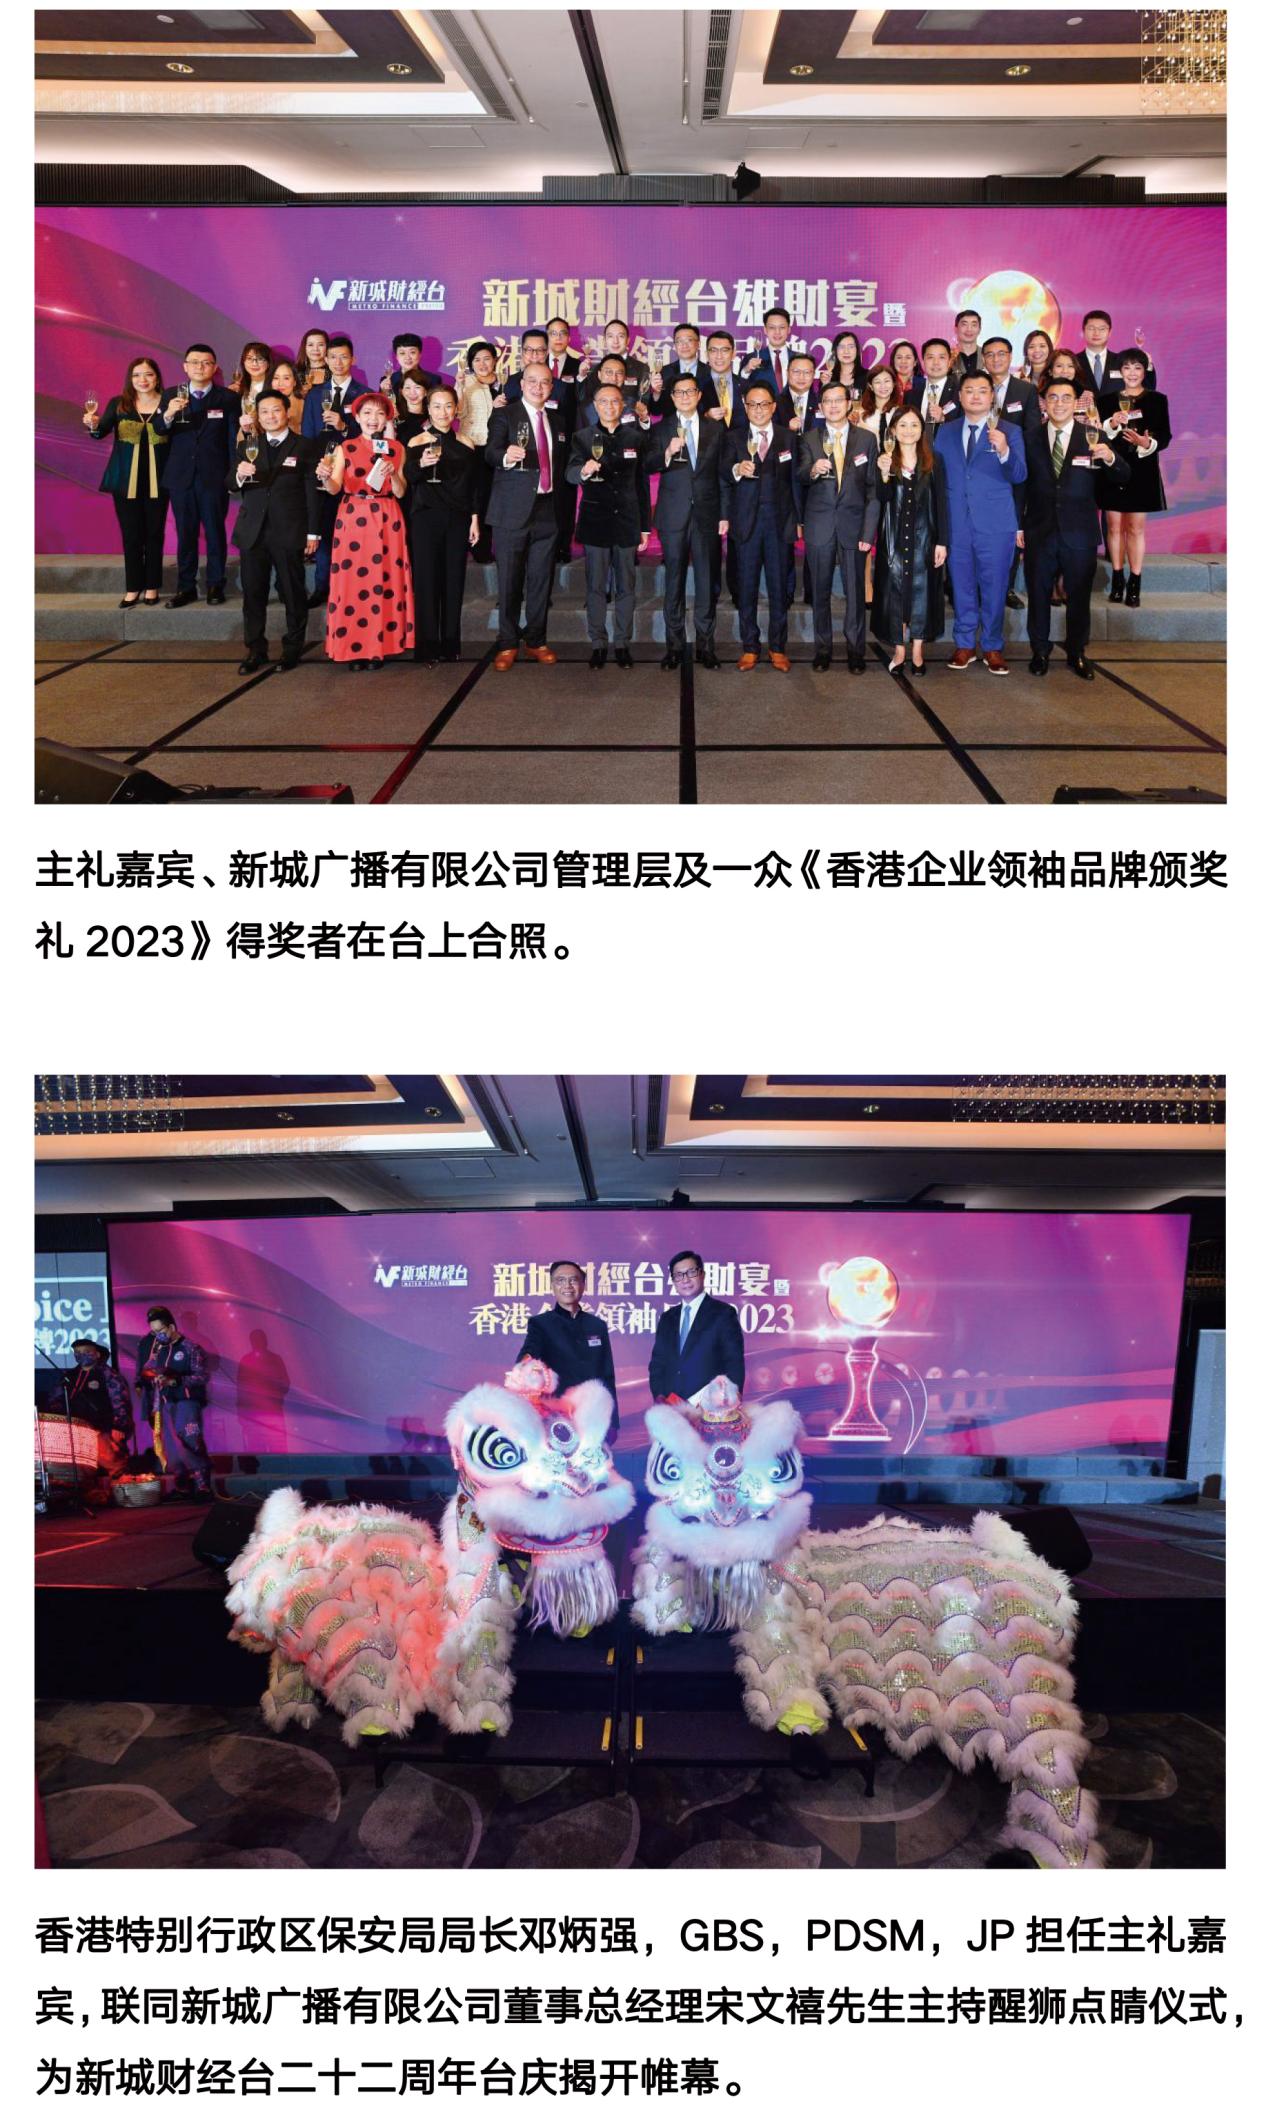 新城财经台主办 《香港企业领袖品牌颁奖礼2023》